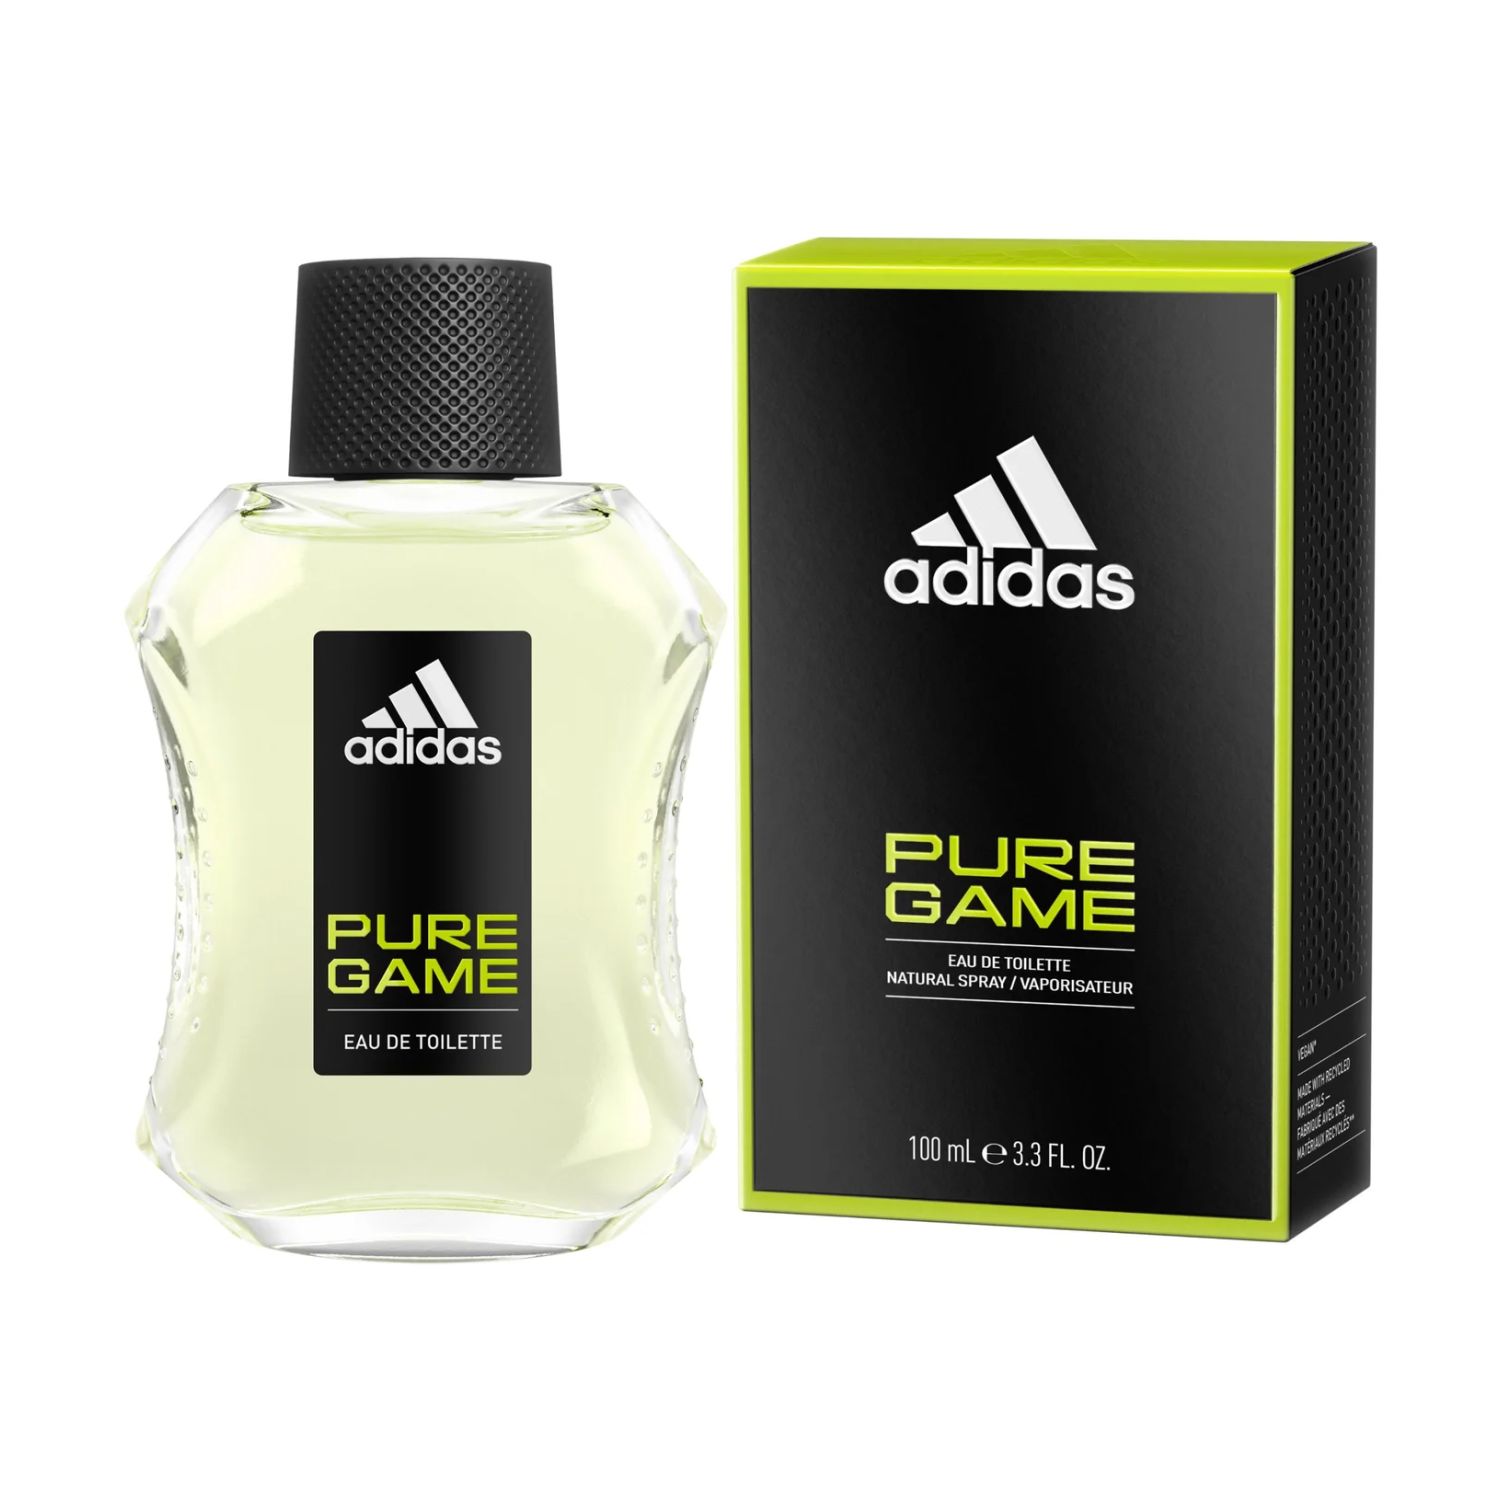 Pure Game by Adidas Eau de Toilette 100ml